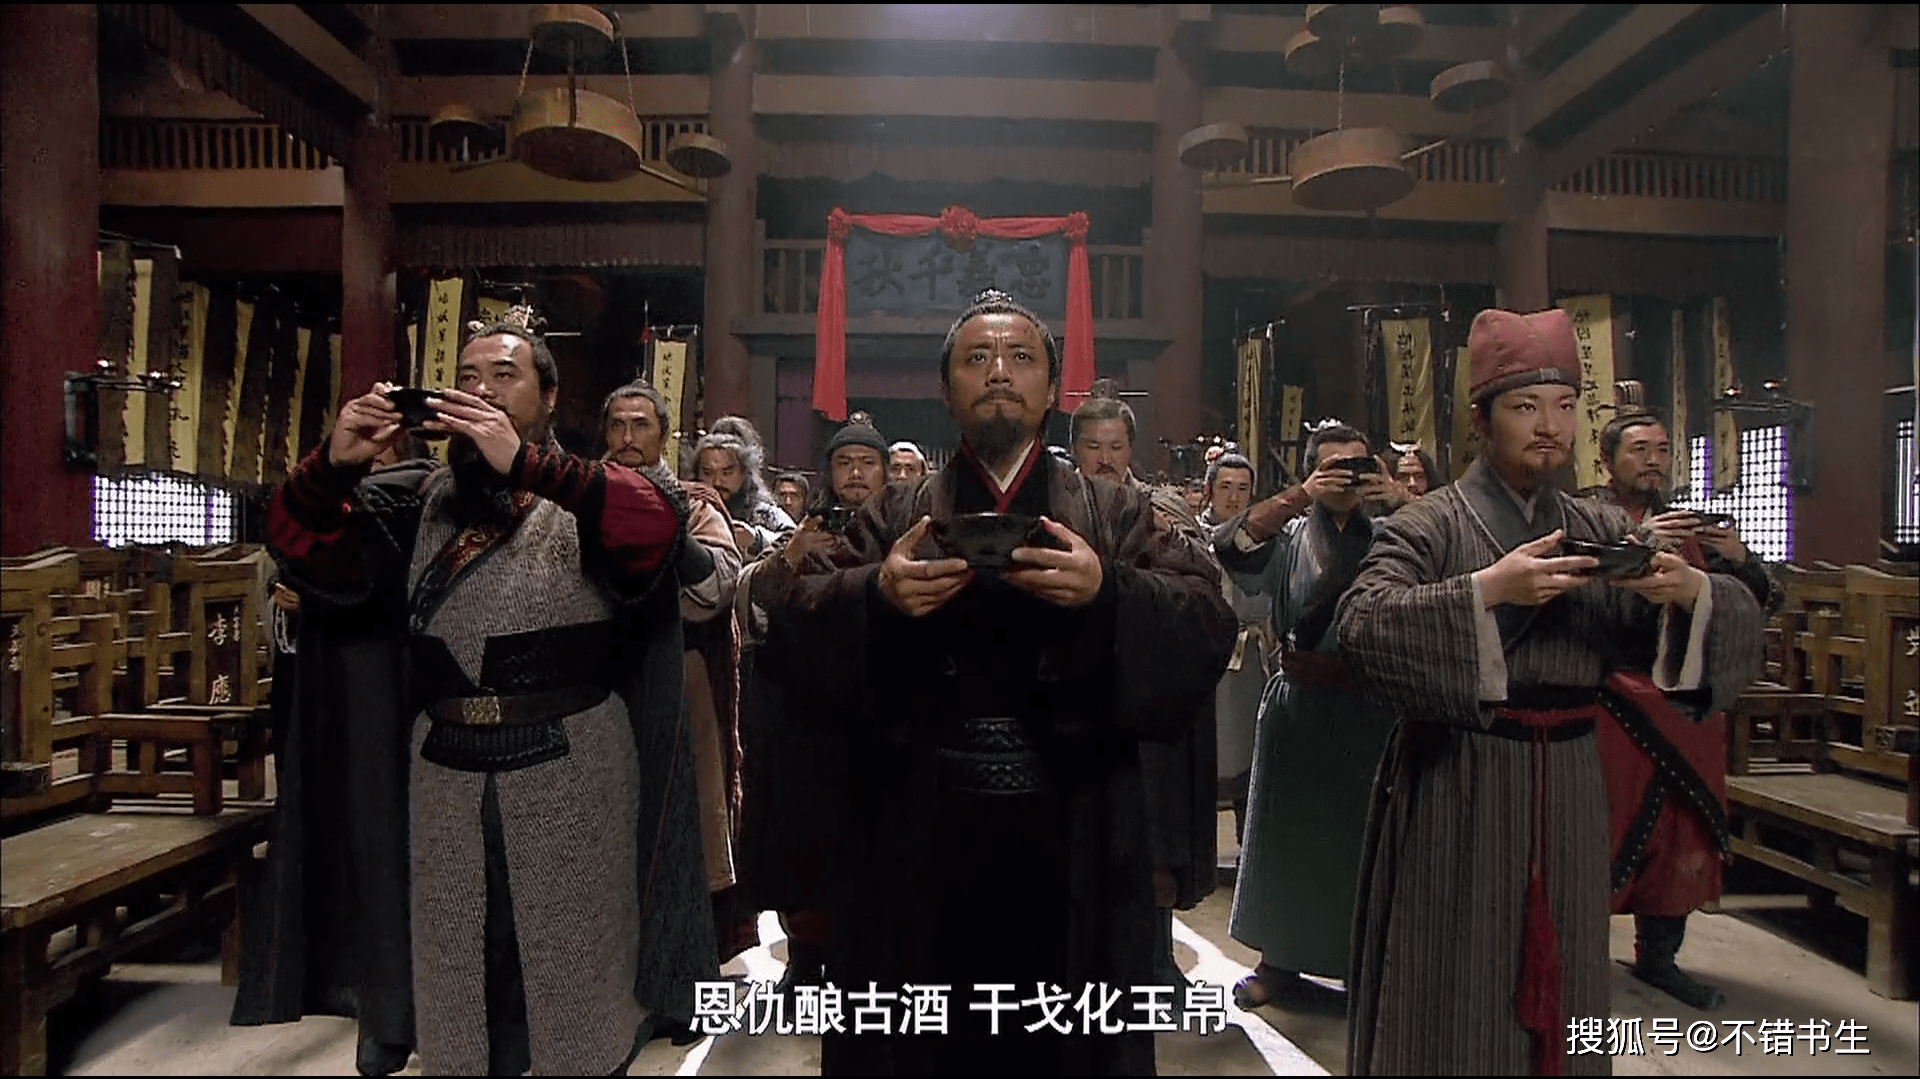 在通行版水浒传中,宋江将聚义厅改为忠义堂,后来率领梁山泊好汉一起